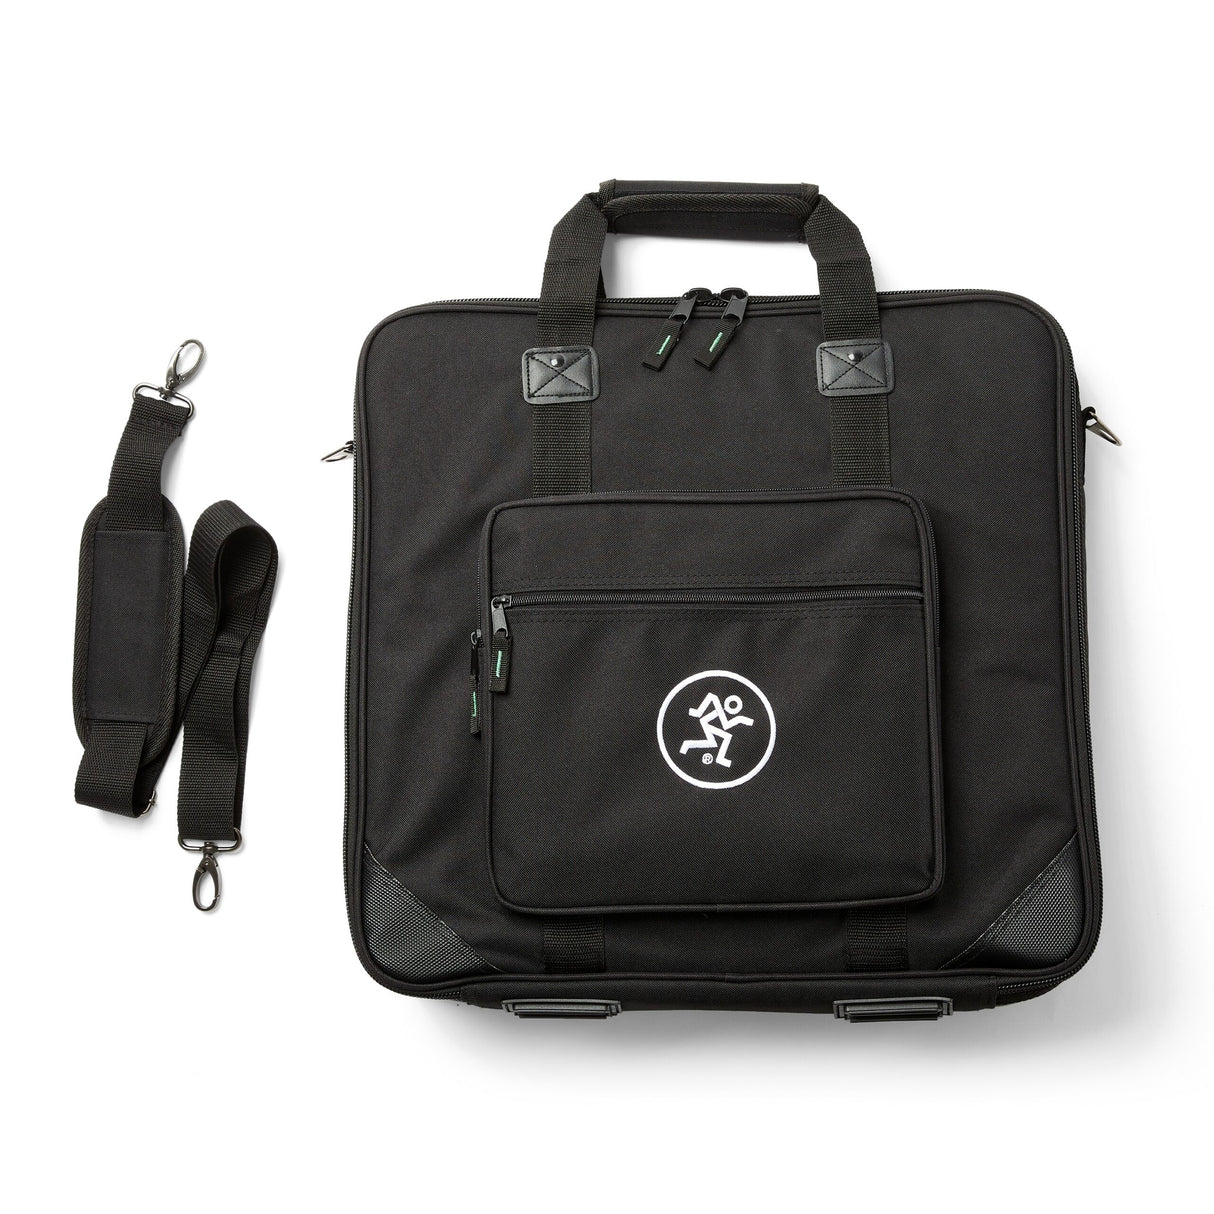 Mackie ProFX16v3 Carry Bag